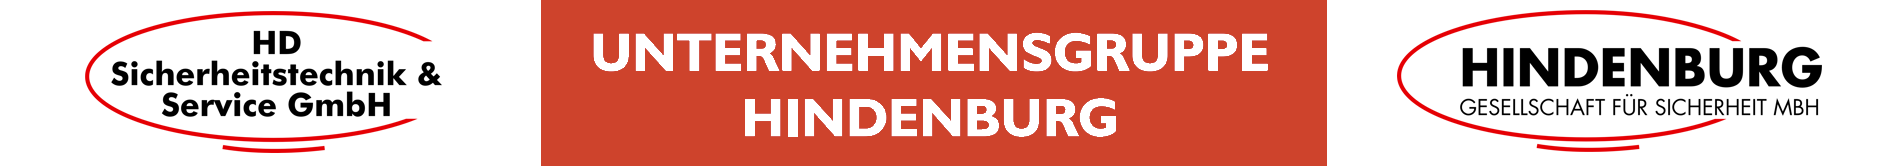 Unternehmensgruppe Hindenburg